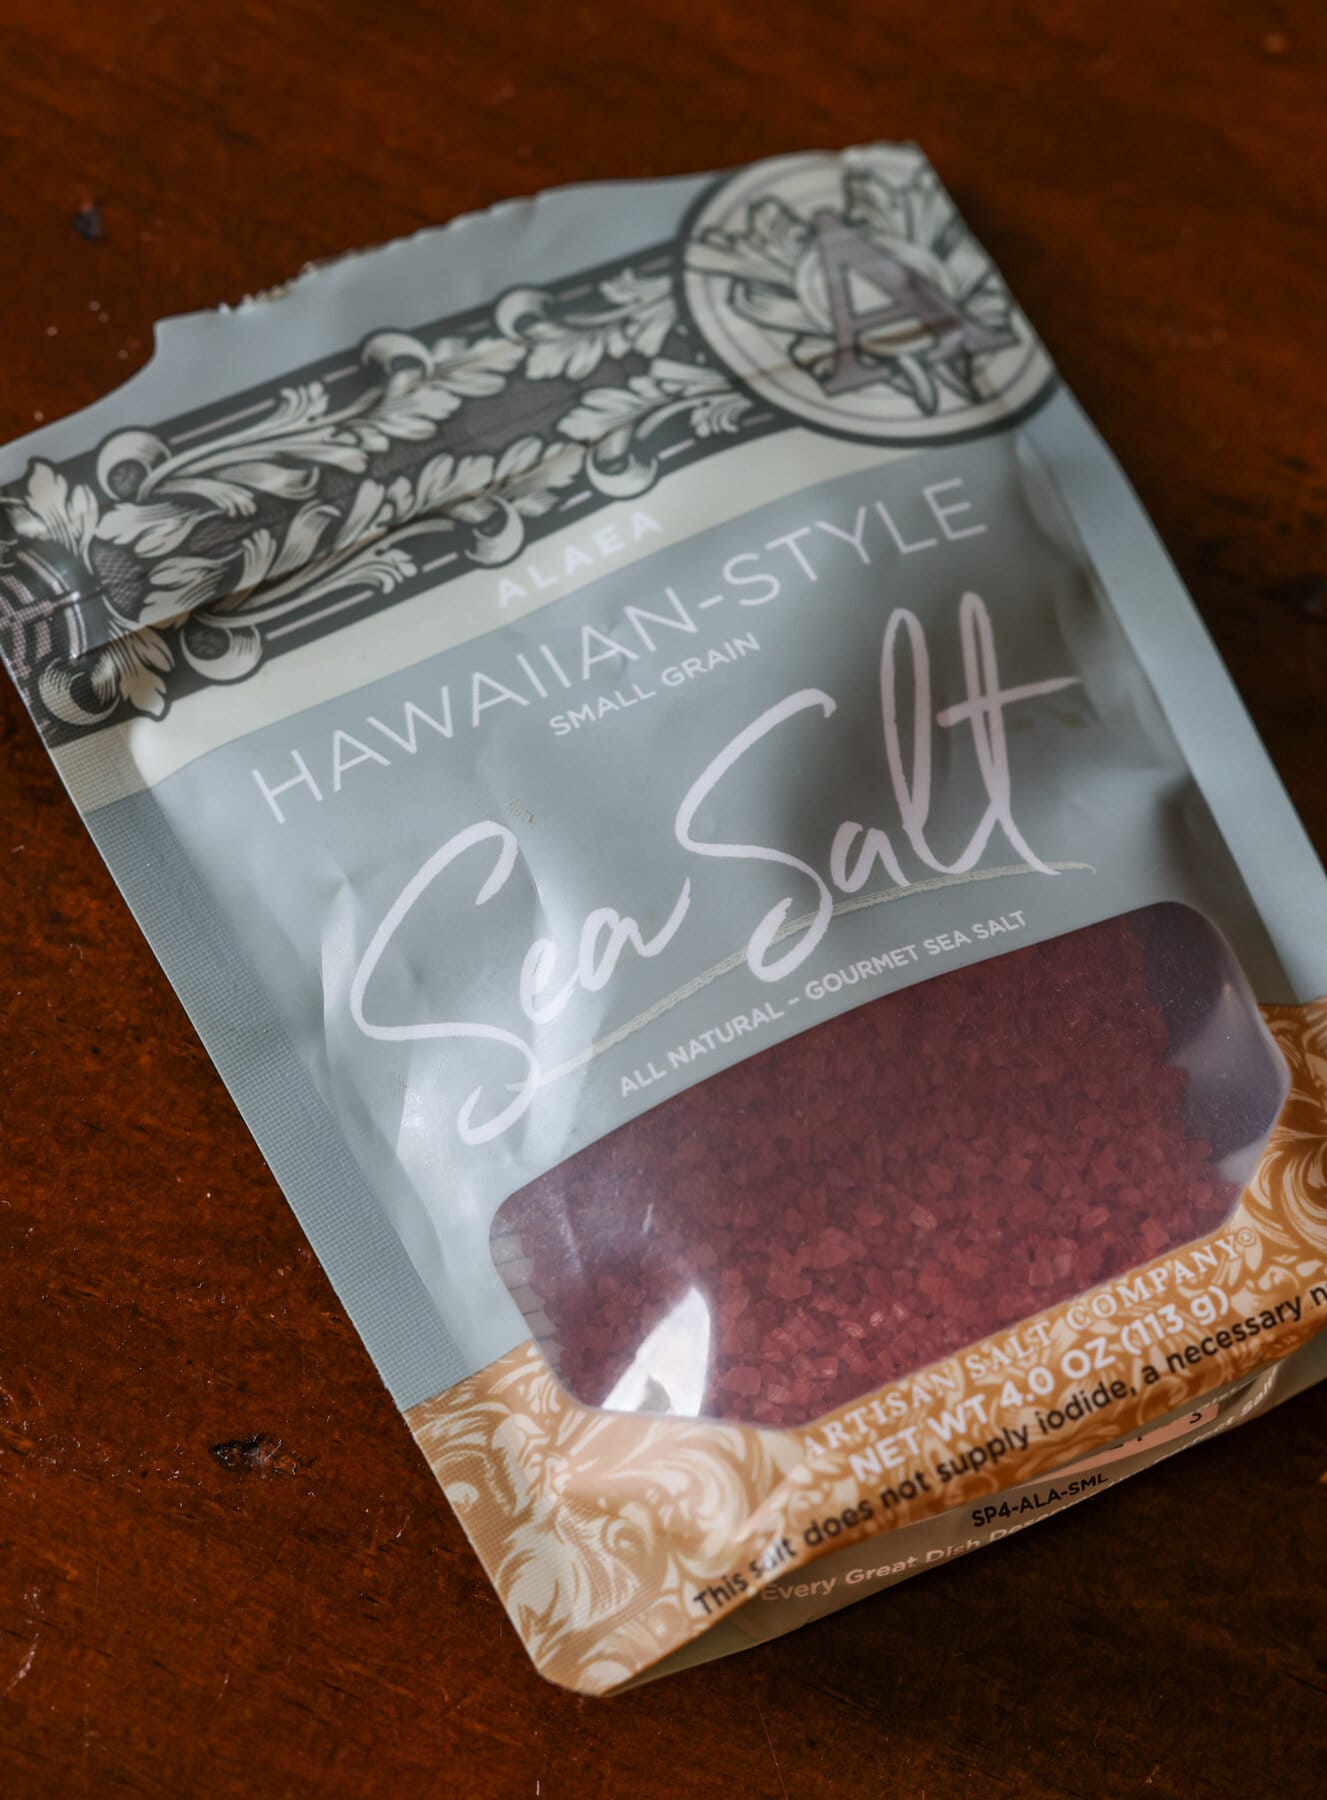 Pink Hawaiian Sea Salt in a bag